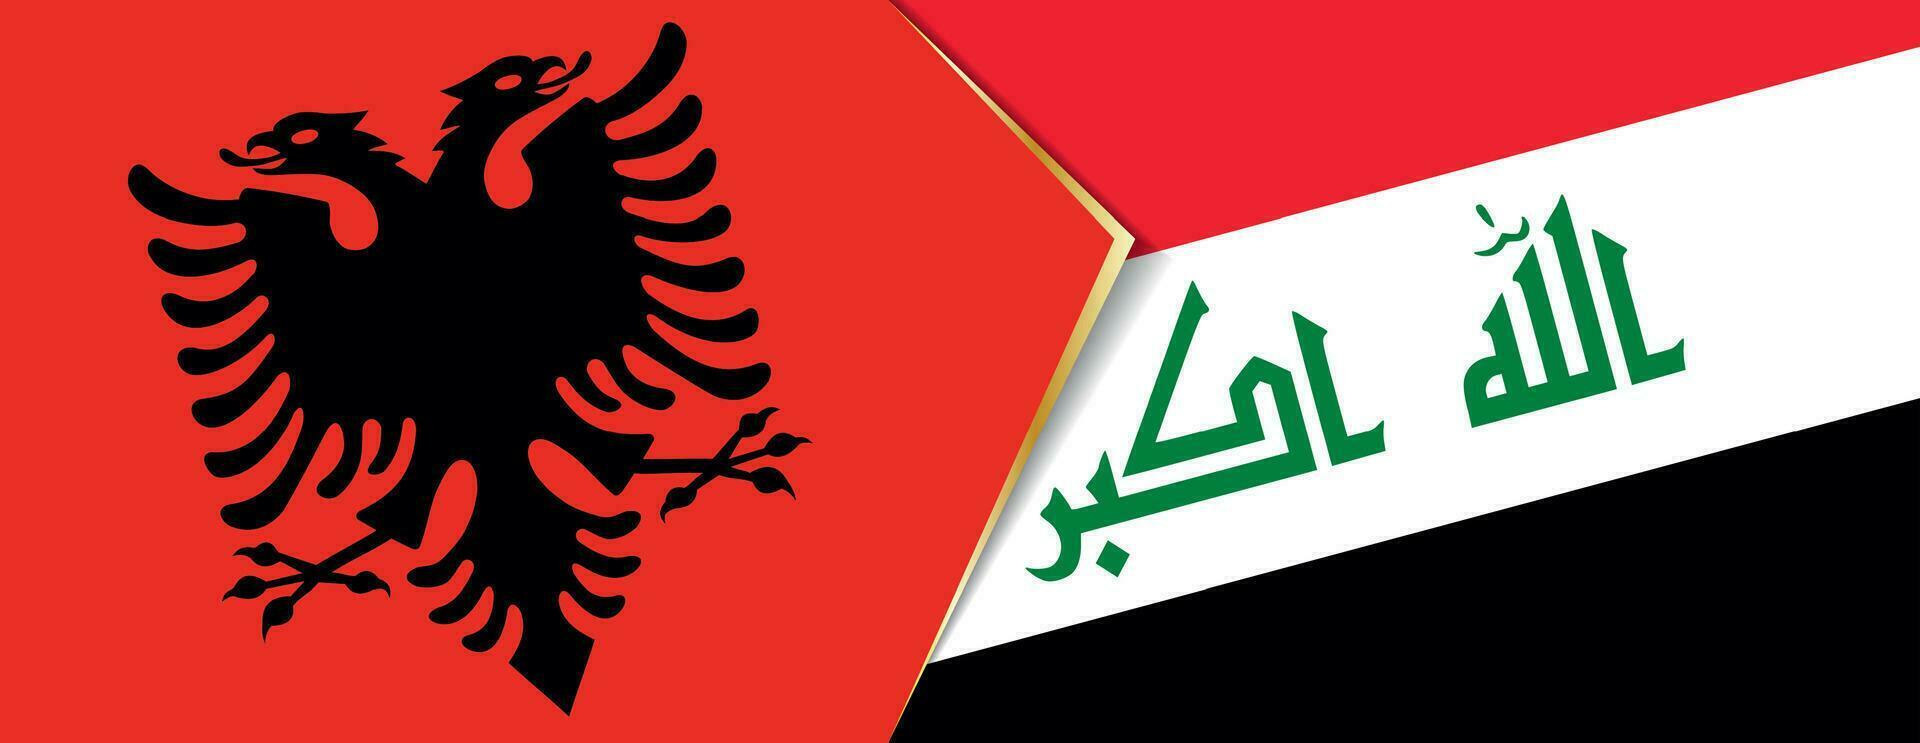 Albania y Irak banderas, dos vector banderas